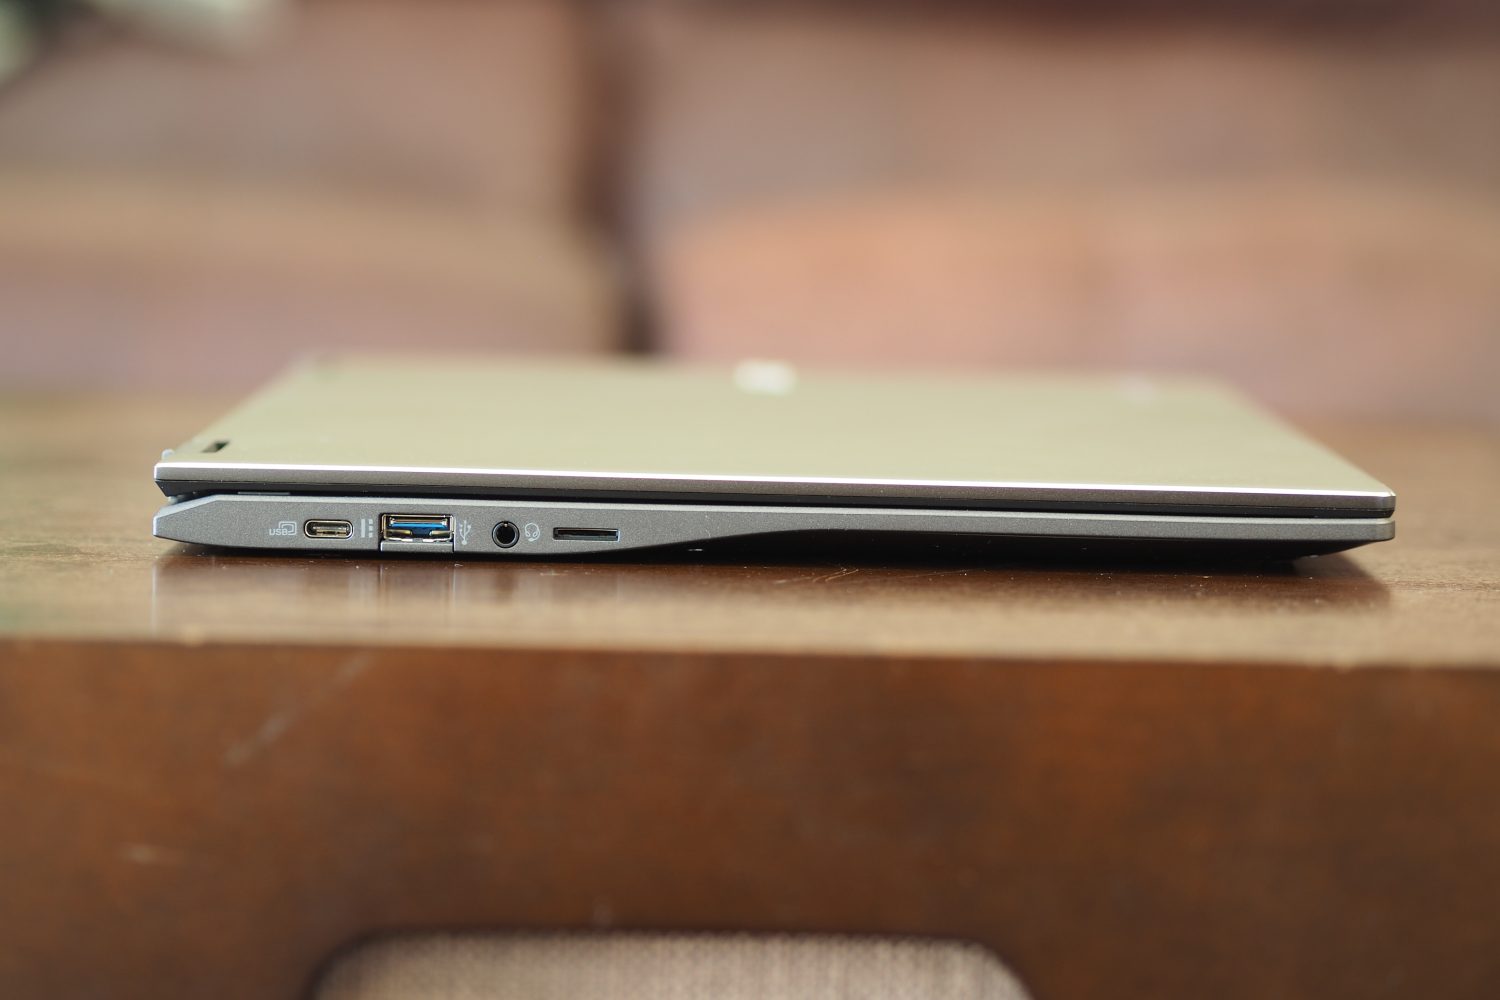 Vista lateral esquerda do Acer Chromebook Spin 513 mostrando as portas.